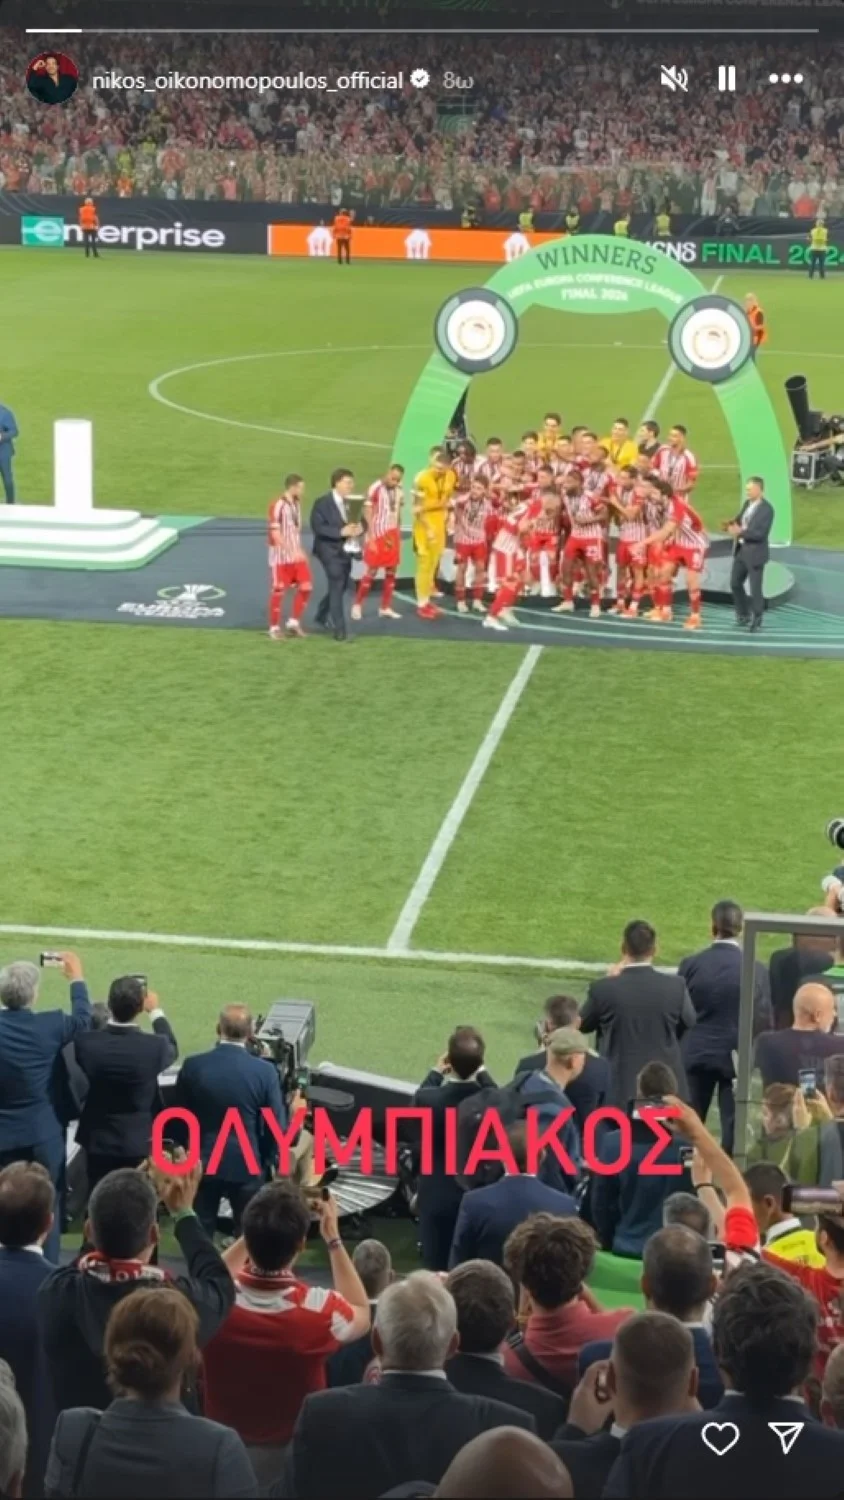 Ο Νίκος Οικονομόπουλος δημοσίευσε στιγμιότυπα μέσα από το γήπεδο